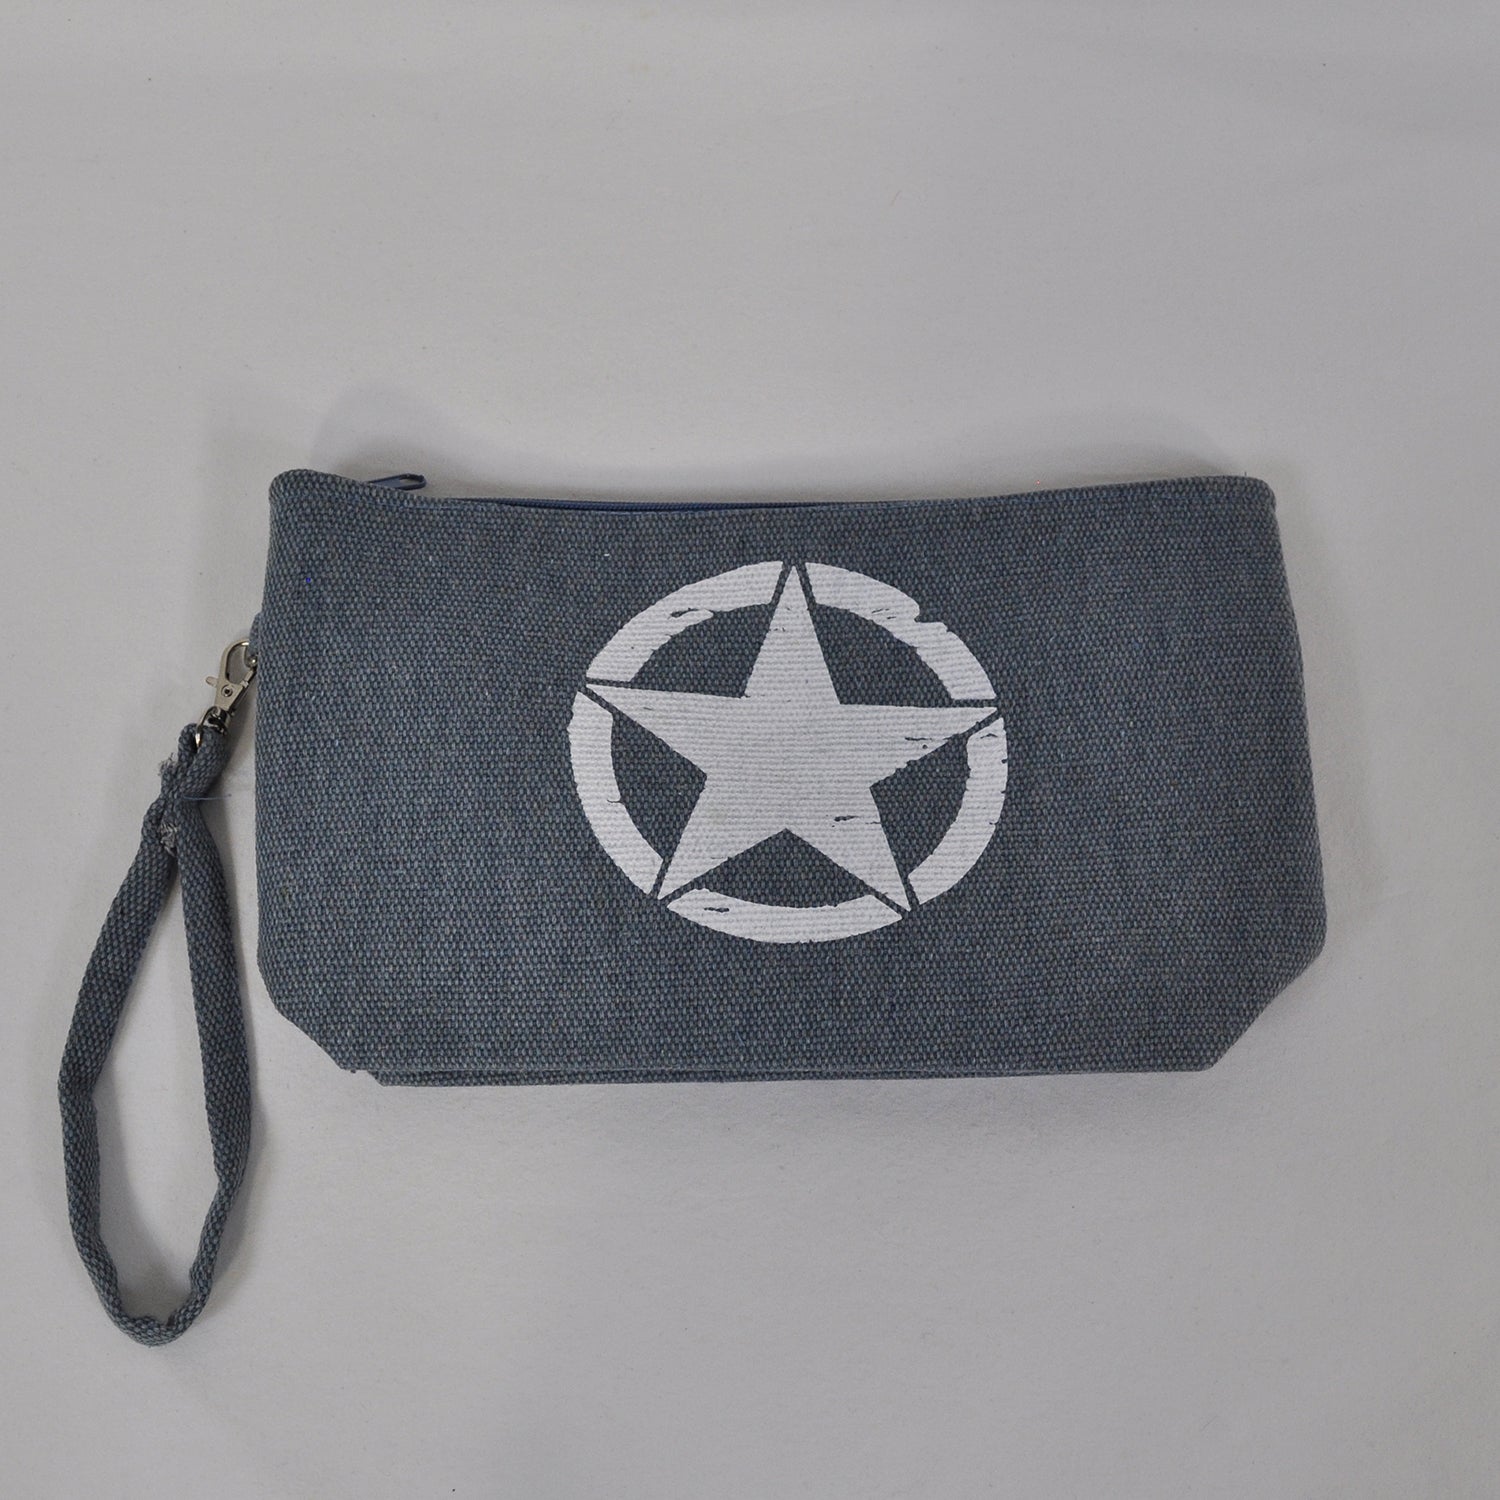 Blue star coin purse